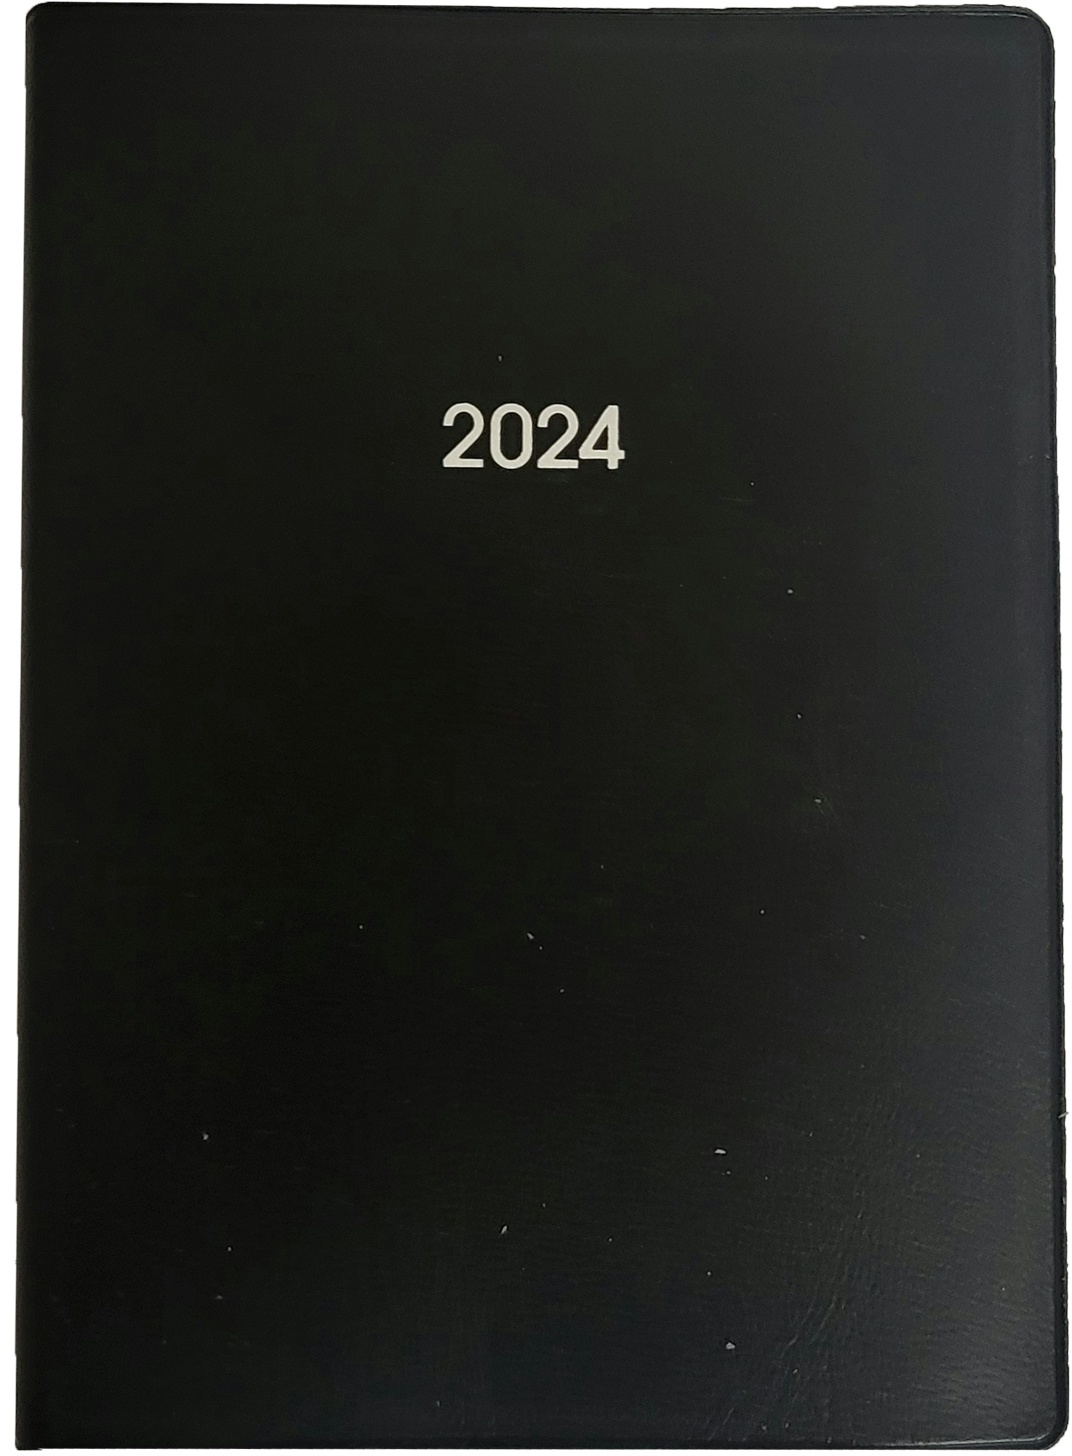 2024 Adina Taschenkalender 1S/1T 336S schwarz